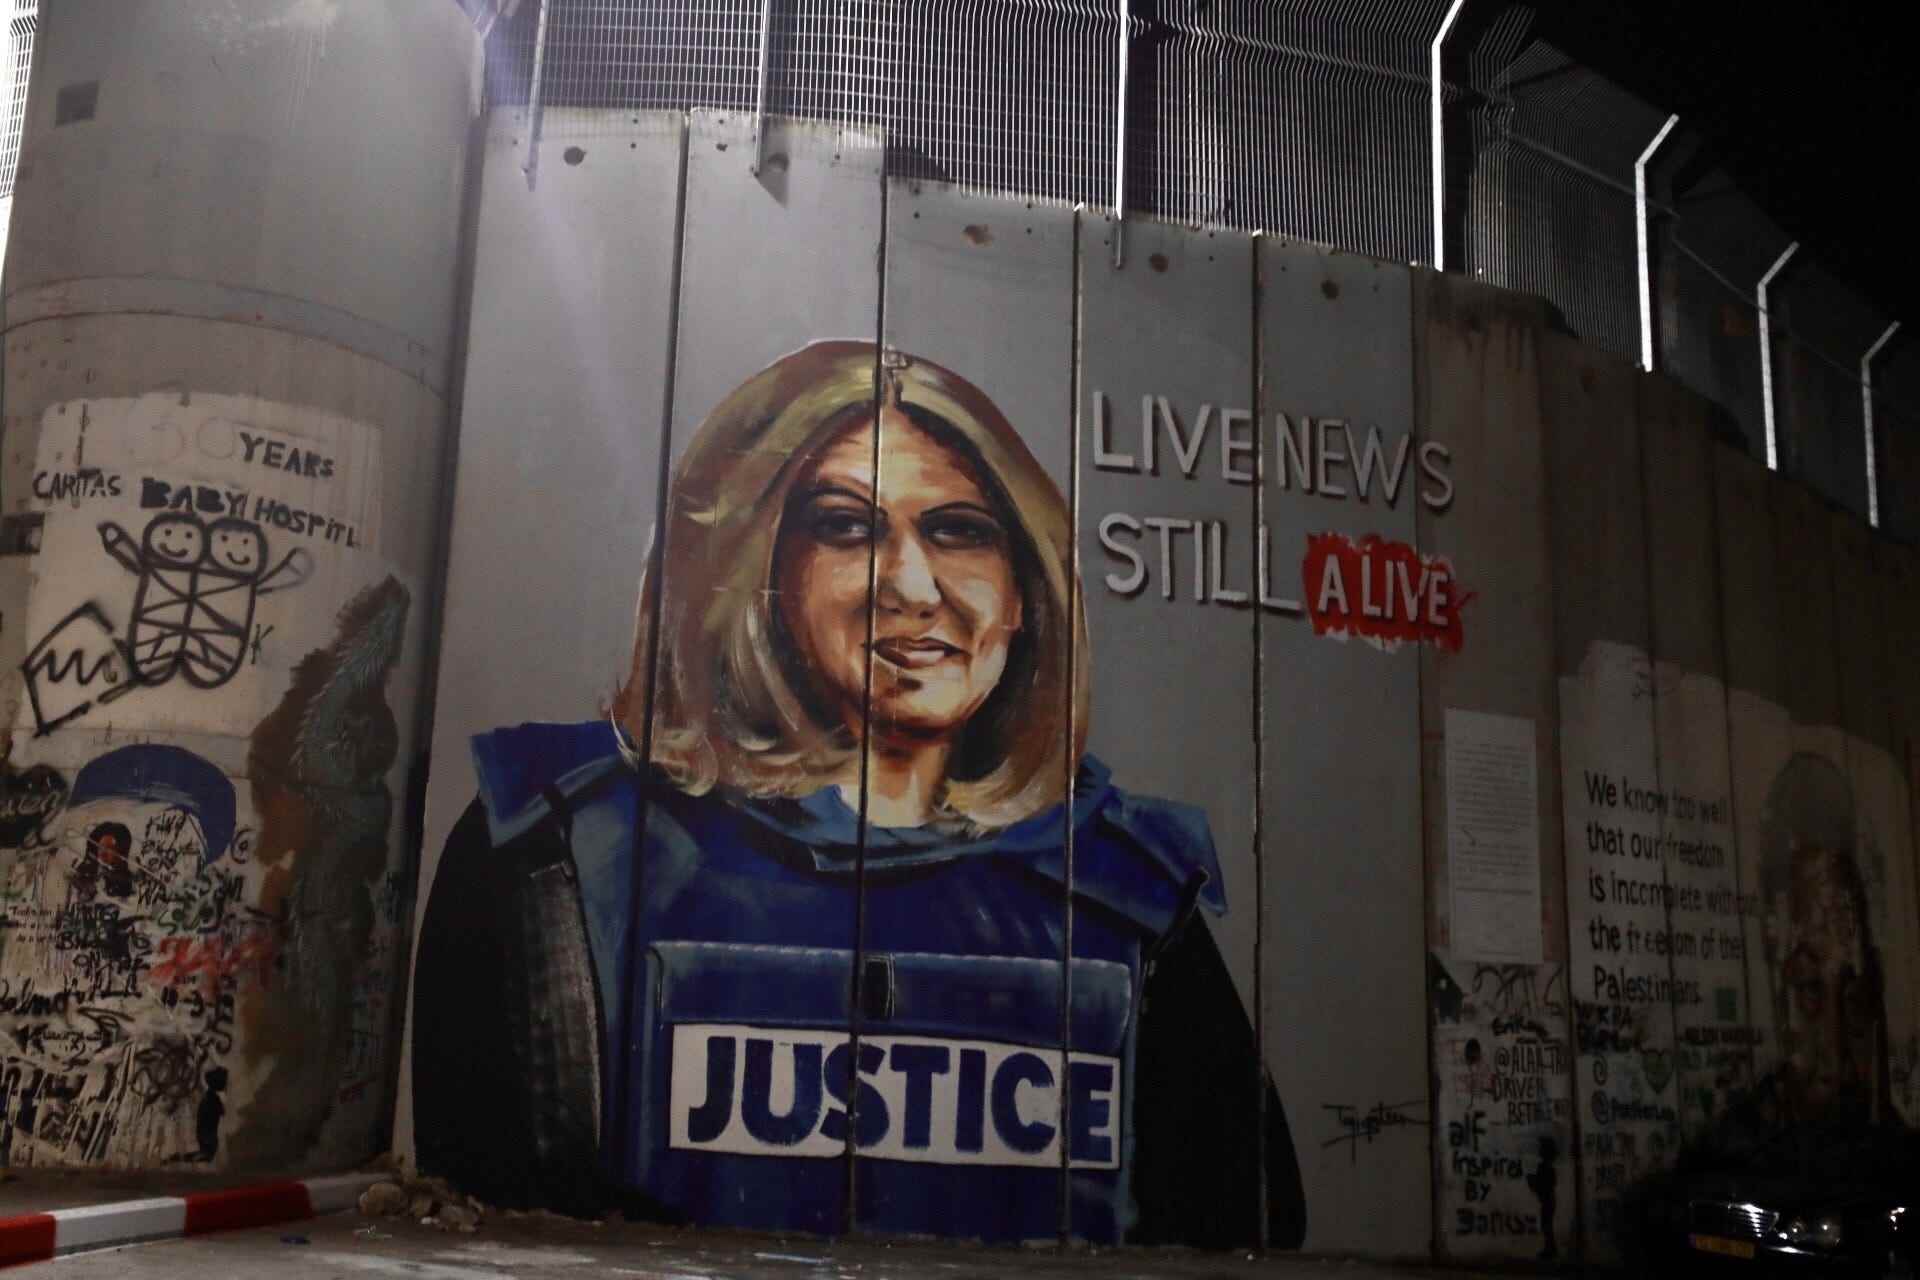 Plakate der Al-Jazeera-Journalistin Shireen Abu Akleh, die von israelischen Streitkräften getötet wurde, sind während der Vorbereitungen für den Besuch von US-Präsident Joe Biden am 14. Juli 2022 in Bethlehem im Westjordanland zu sehen